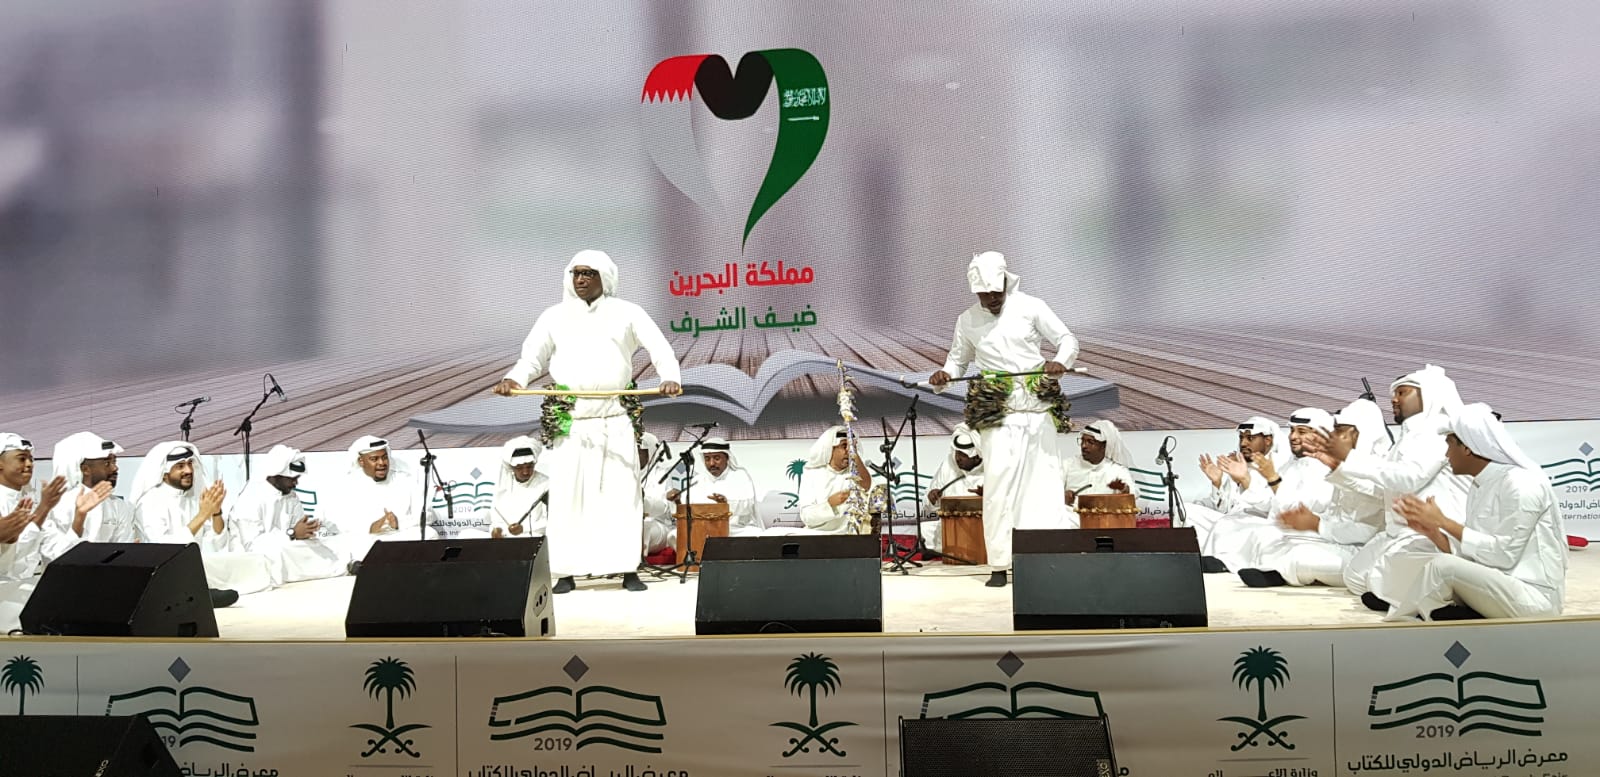 The Curtain Falls on the Guest of Honour’s Cultural Season, At Riyadh International Book Fair : Jassim Al Harban wit Ismail Dawwas Folk Music Band